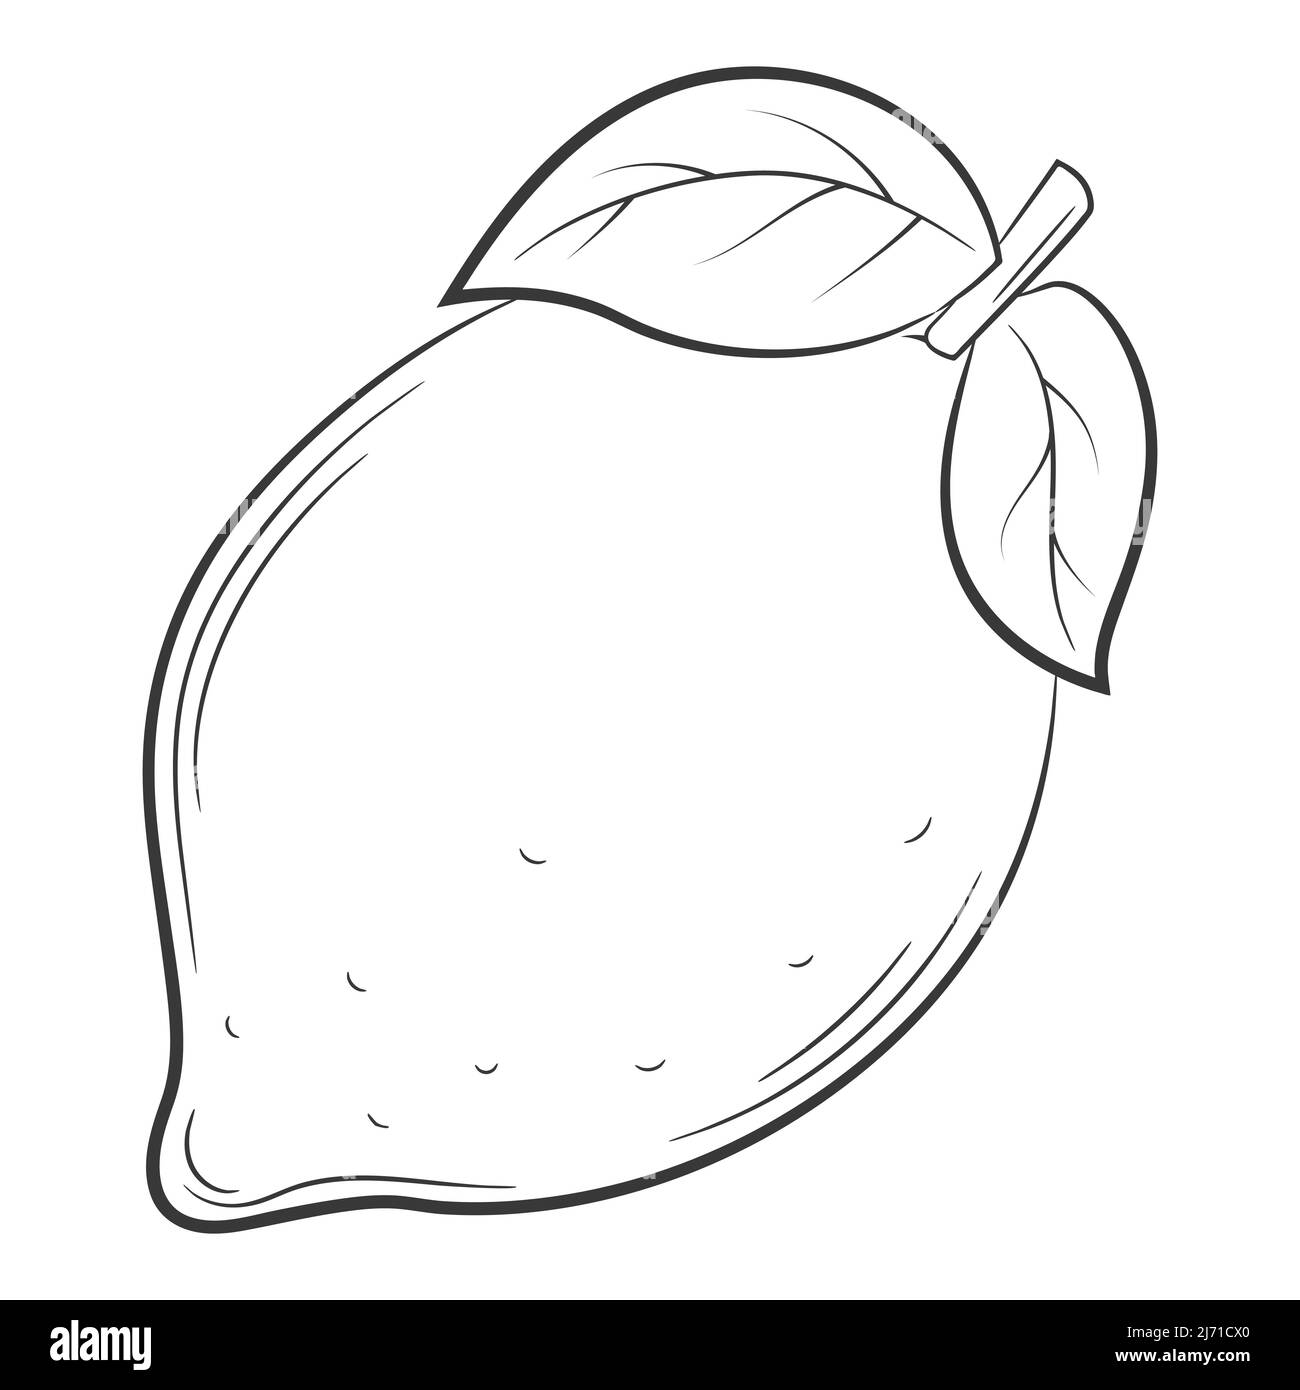 Zitrone, Frucht im linearen Stil. Schwarz-Weiß Vektor dekoratives Element, von Hand gezeichnet.isoliert auf weißem Hintergrund Stock Vektor